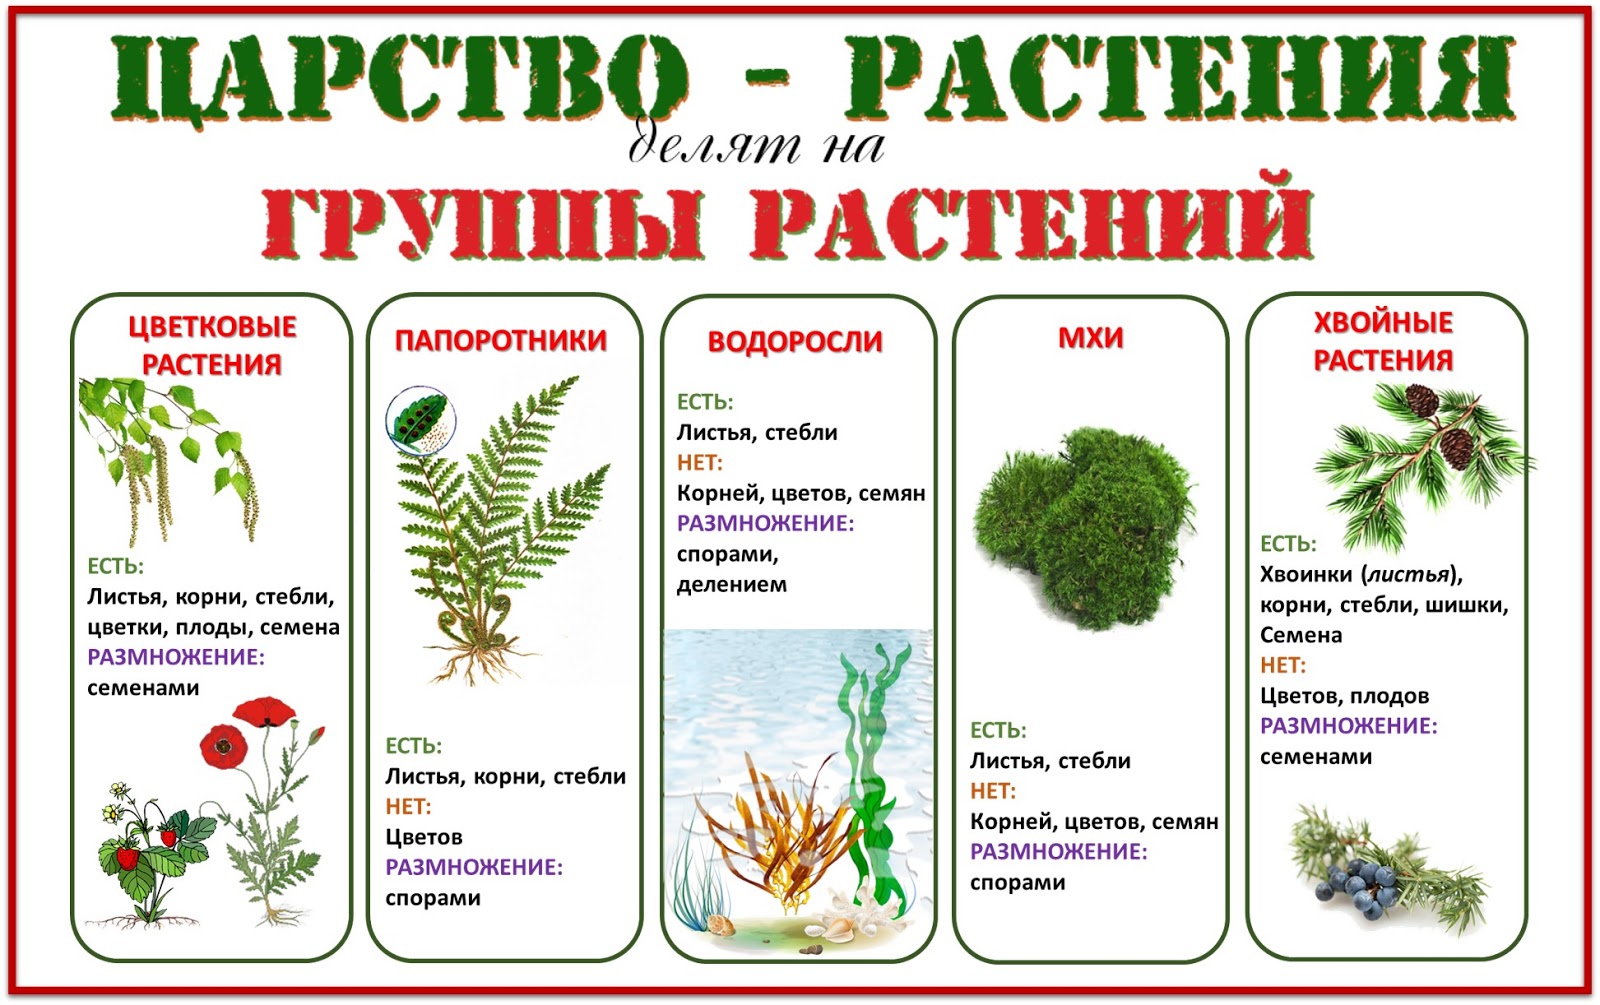 Название группа растений где выращивают. Группы растений. Деление растений на группы. Царство растений. Группы царства растений.